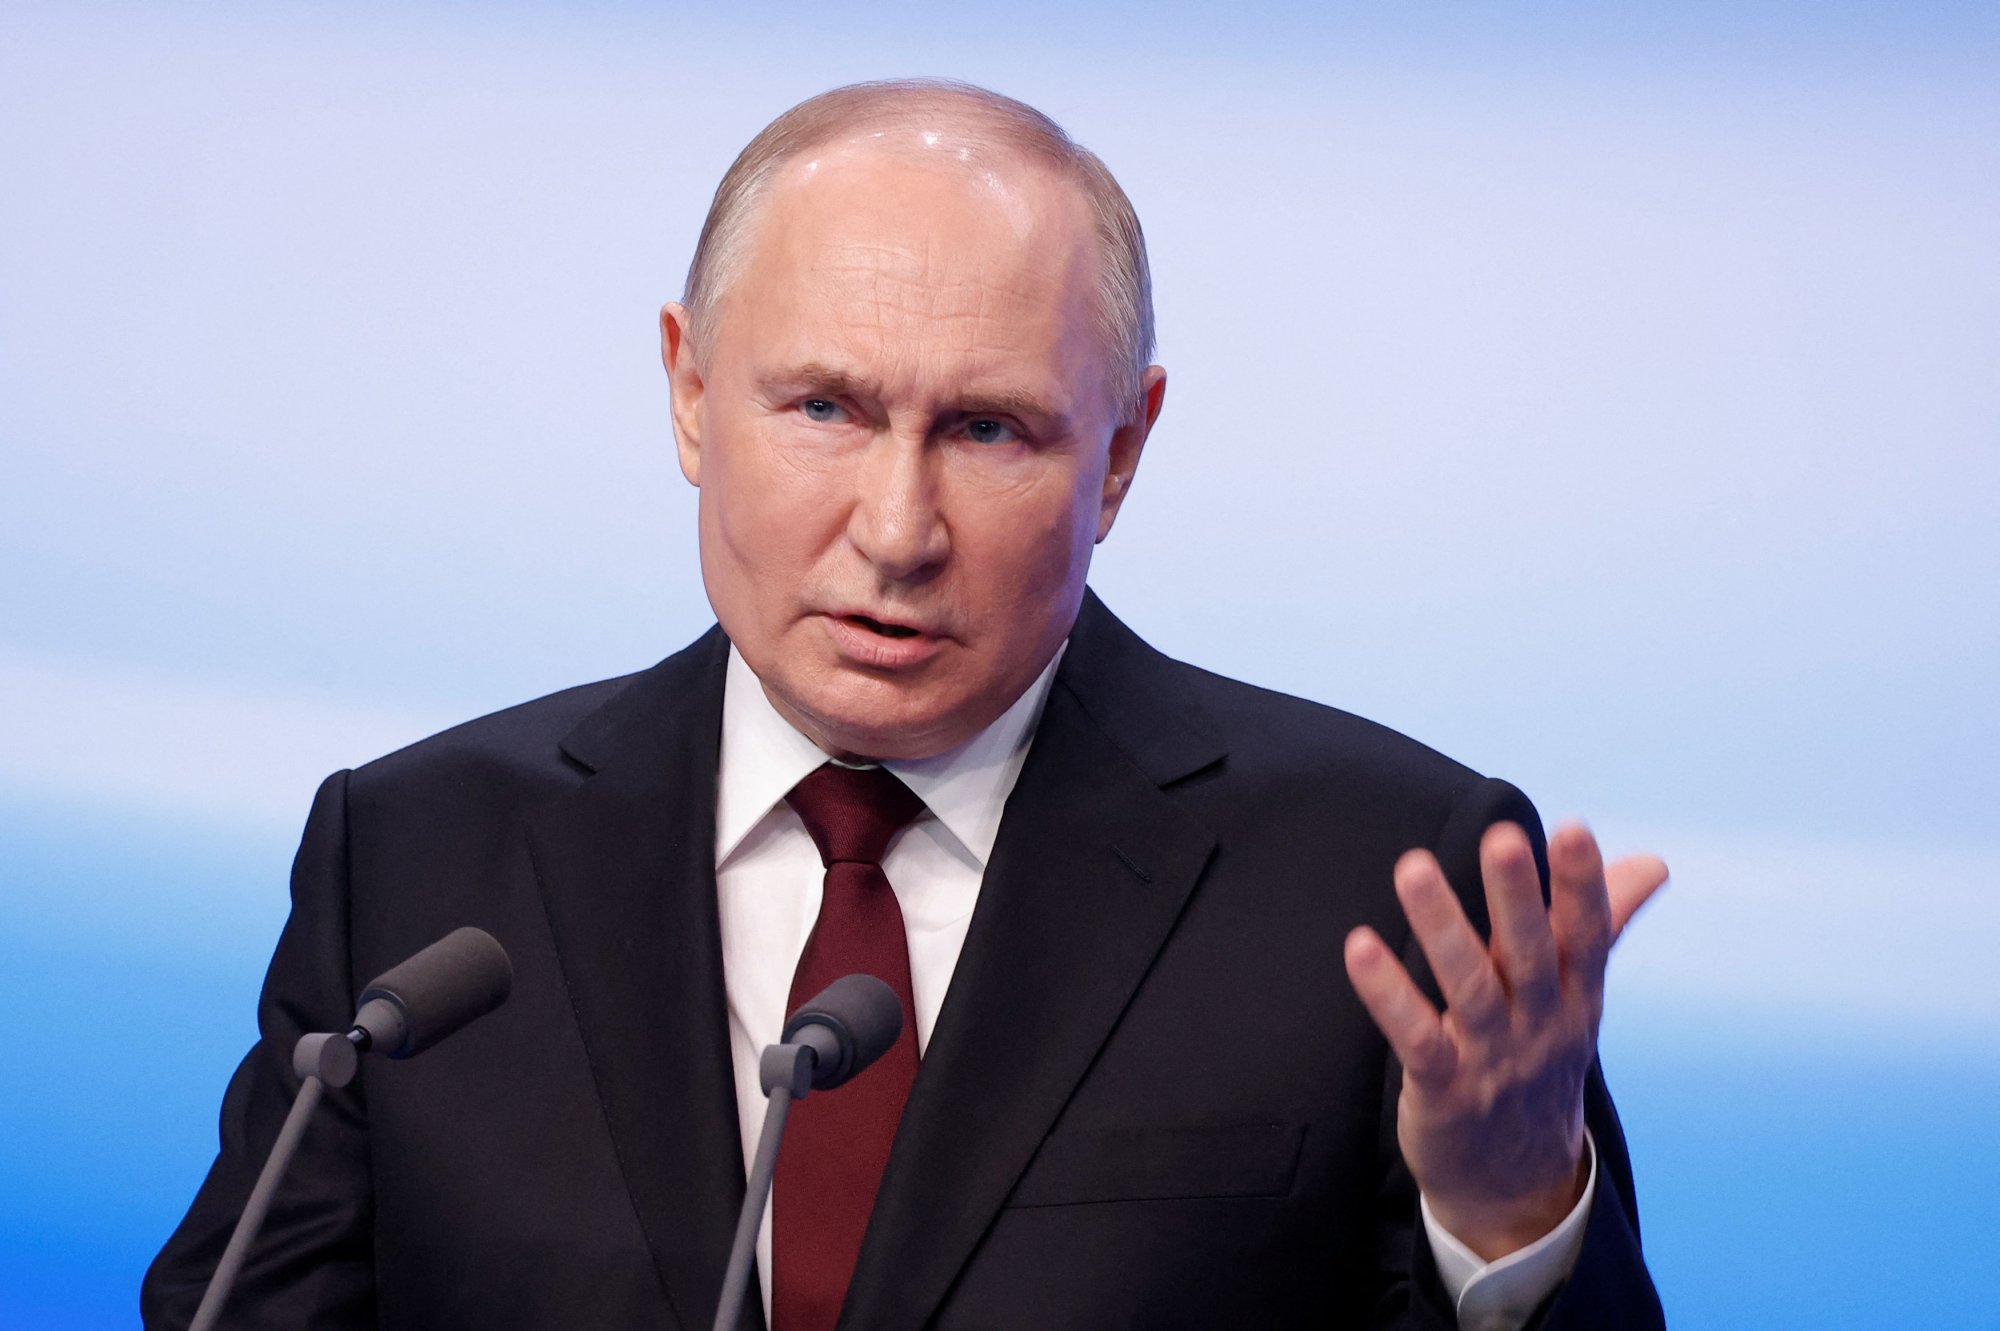 O Πούτιν αποκάλυψε συμφωνία ανταλλαγής του Ναβάλνι με Ρώσο κρατούμενο στη Δύση - «Δυστυχώς συνέβη ό,τι συνέβη»